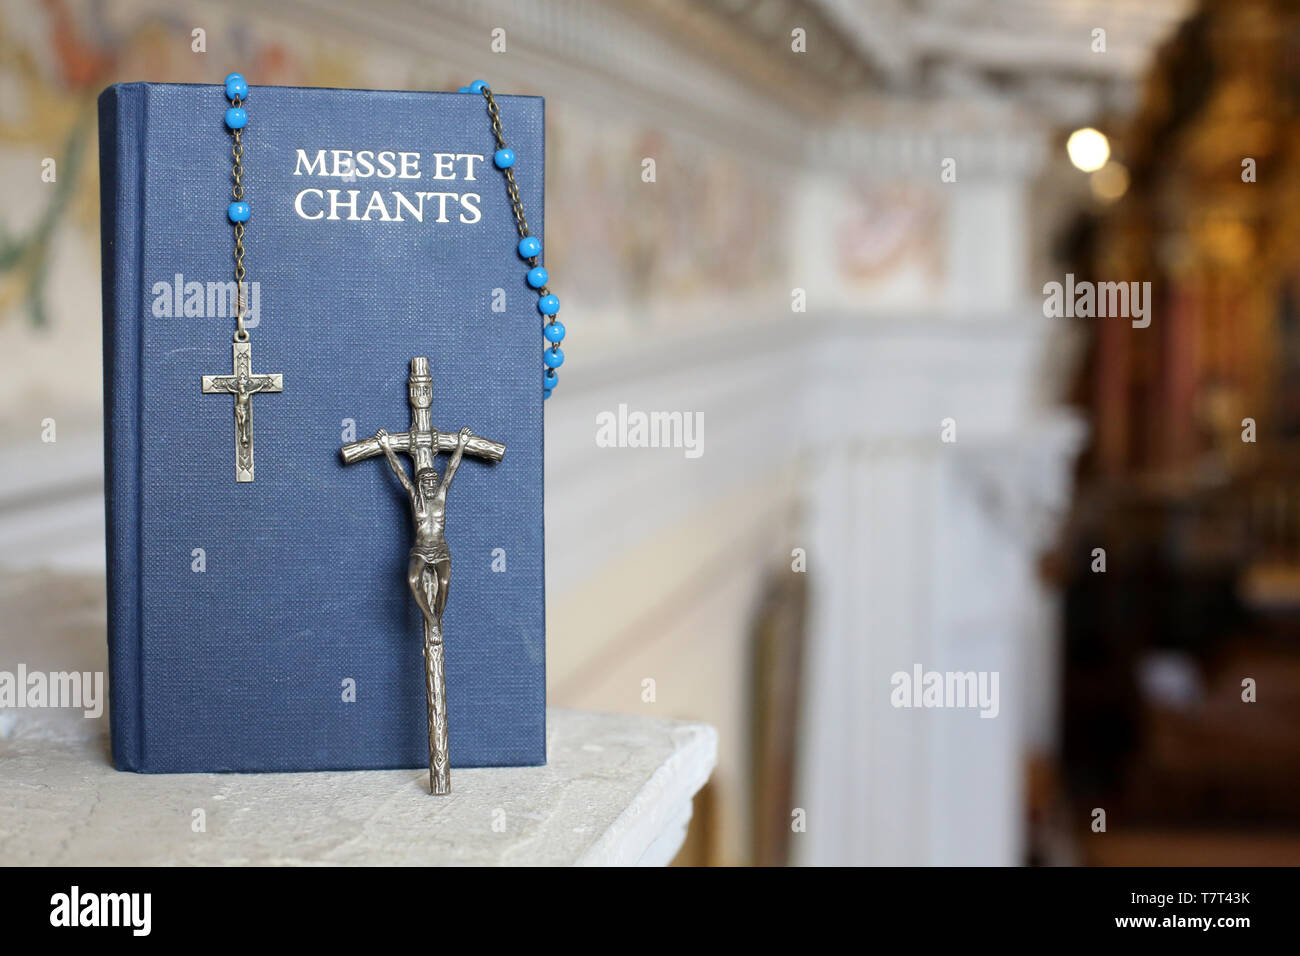 Livre de messe et chants, crucifix et chapelet. Stock Photo